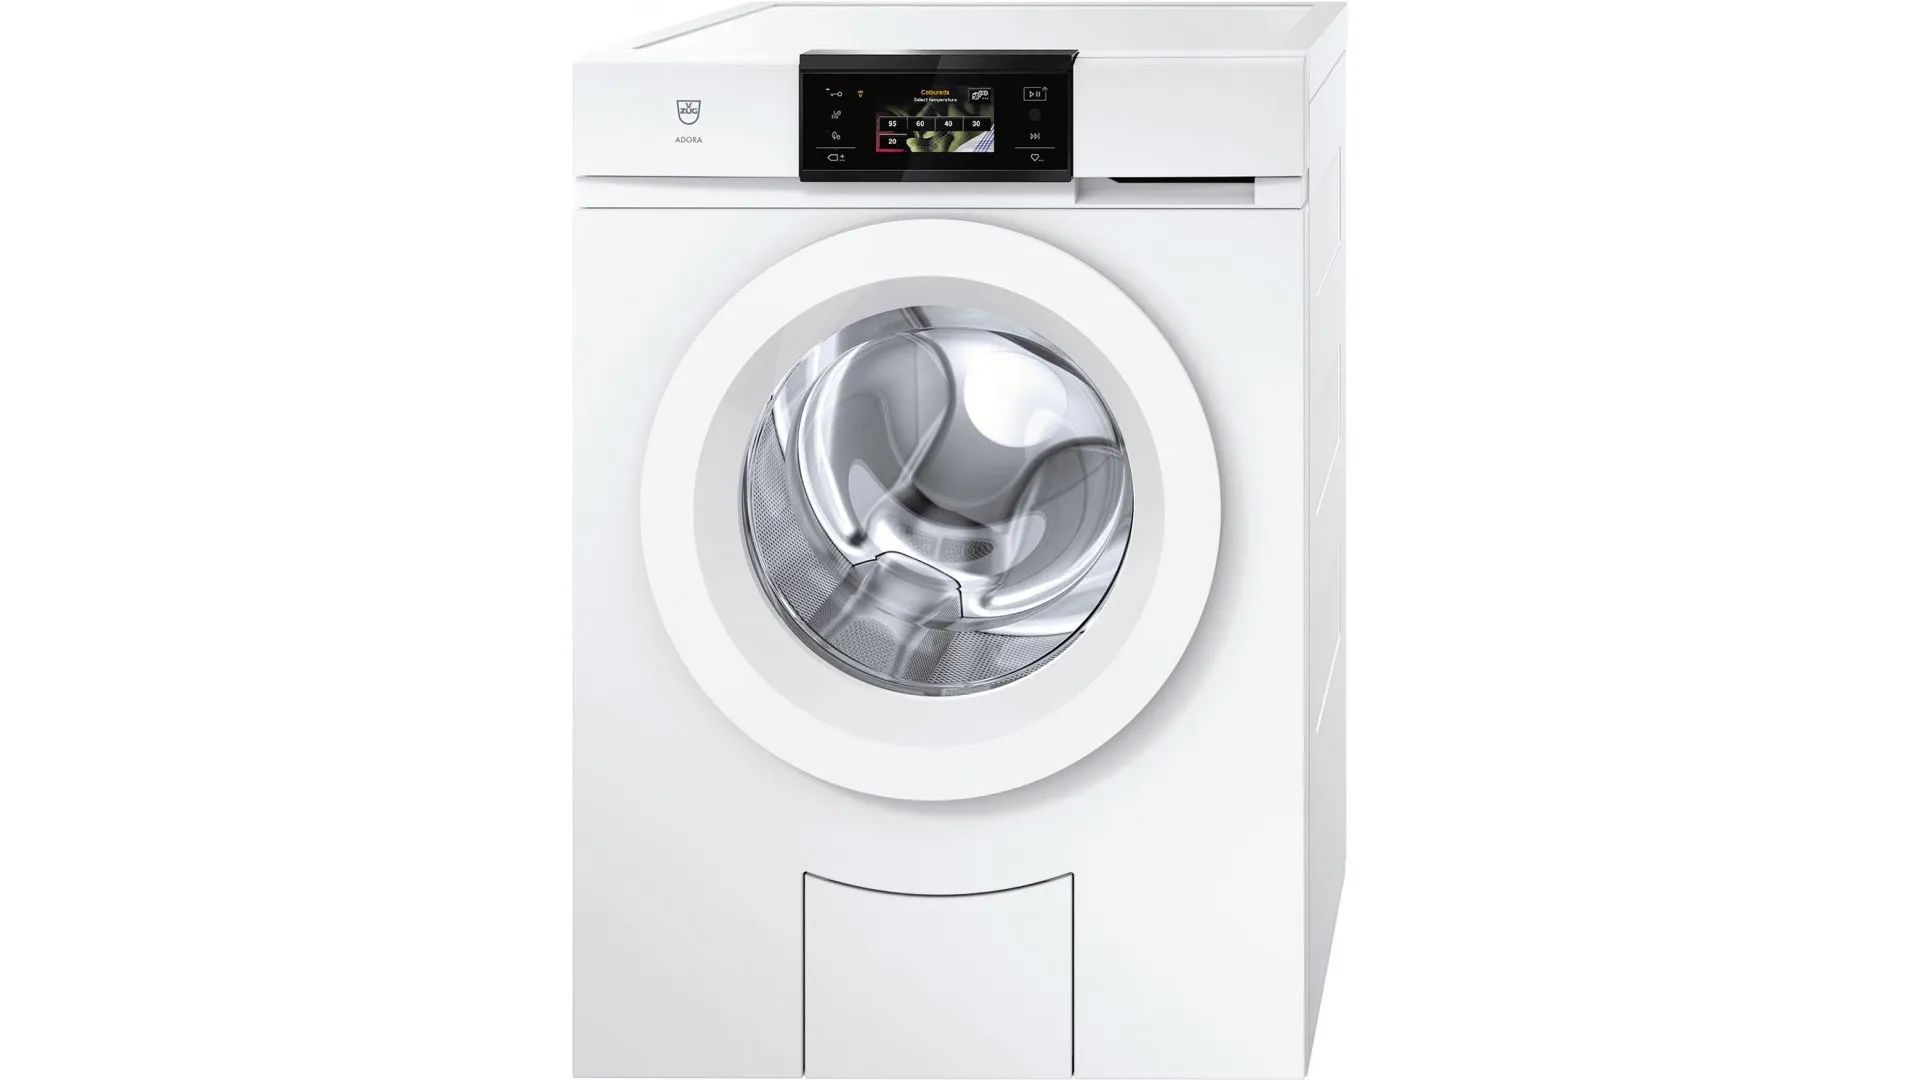 AdoraWash V2000 washing machine